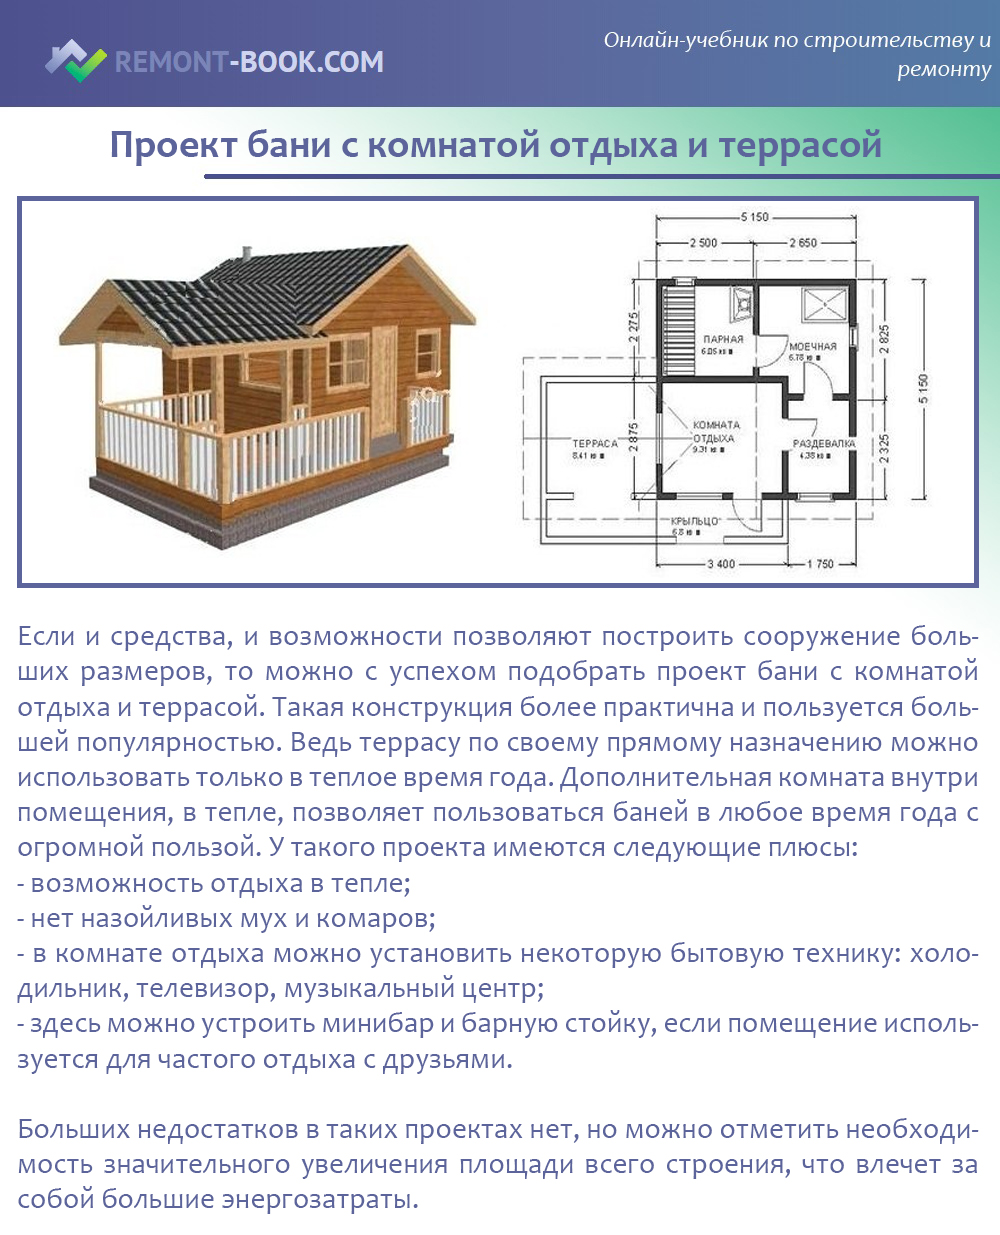 Планировки бань с комнатой отдыха: план и интерьер вариантов с верандой и бассейном, схема сооружения с туалетом